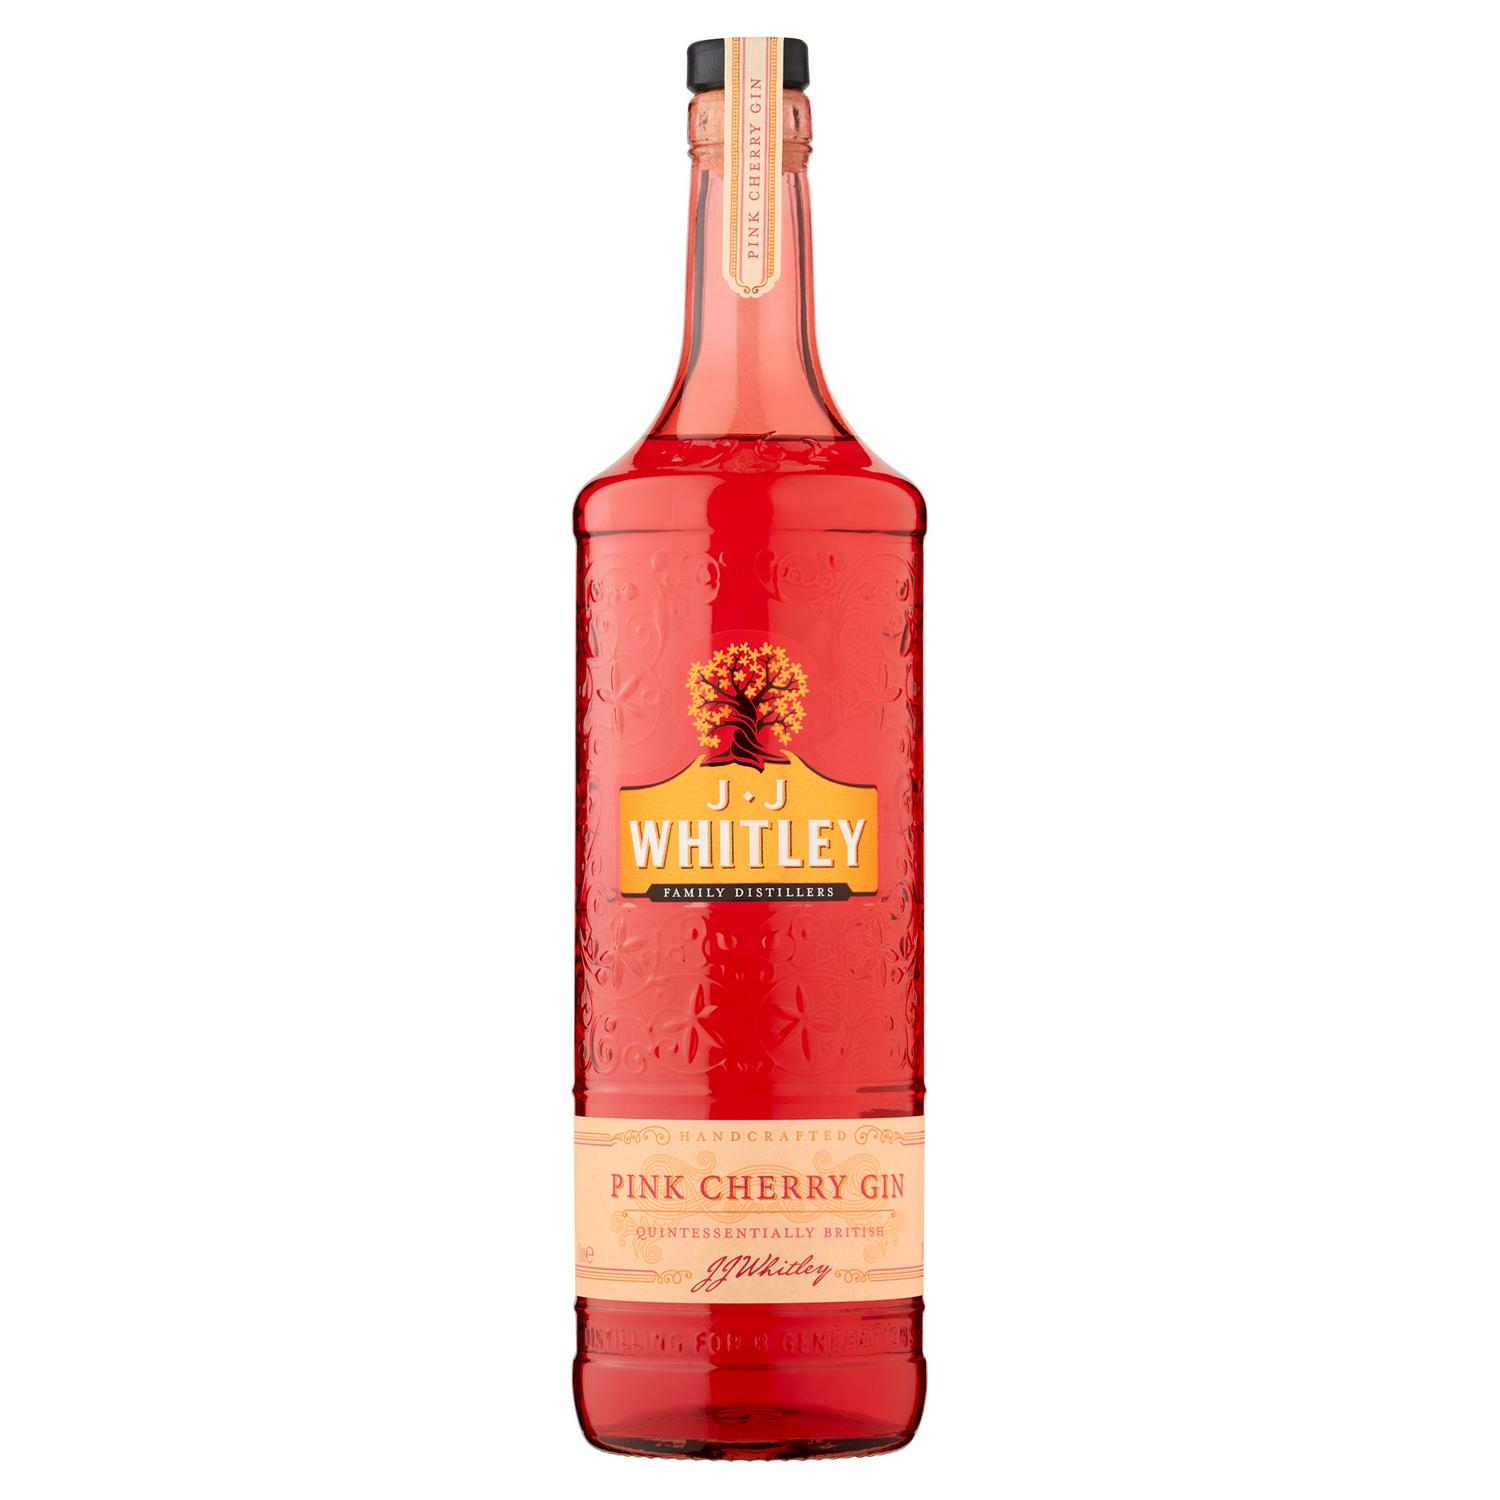 gin hotukdeals deals cheap whitley litre cherry pink